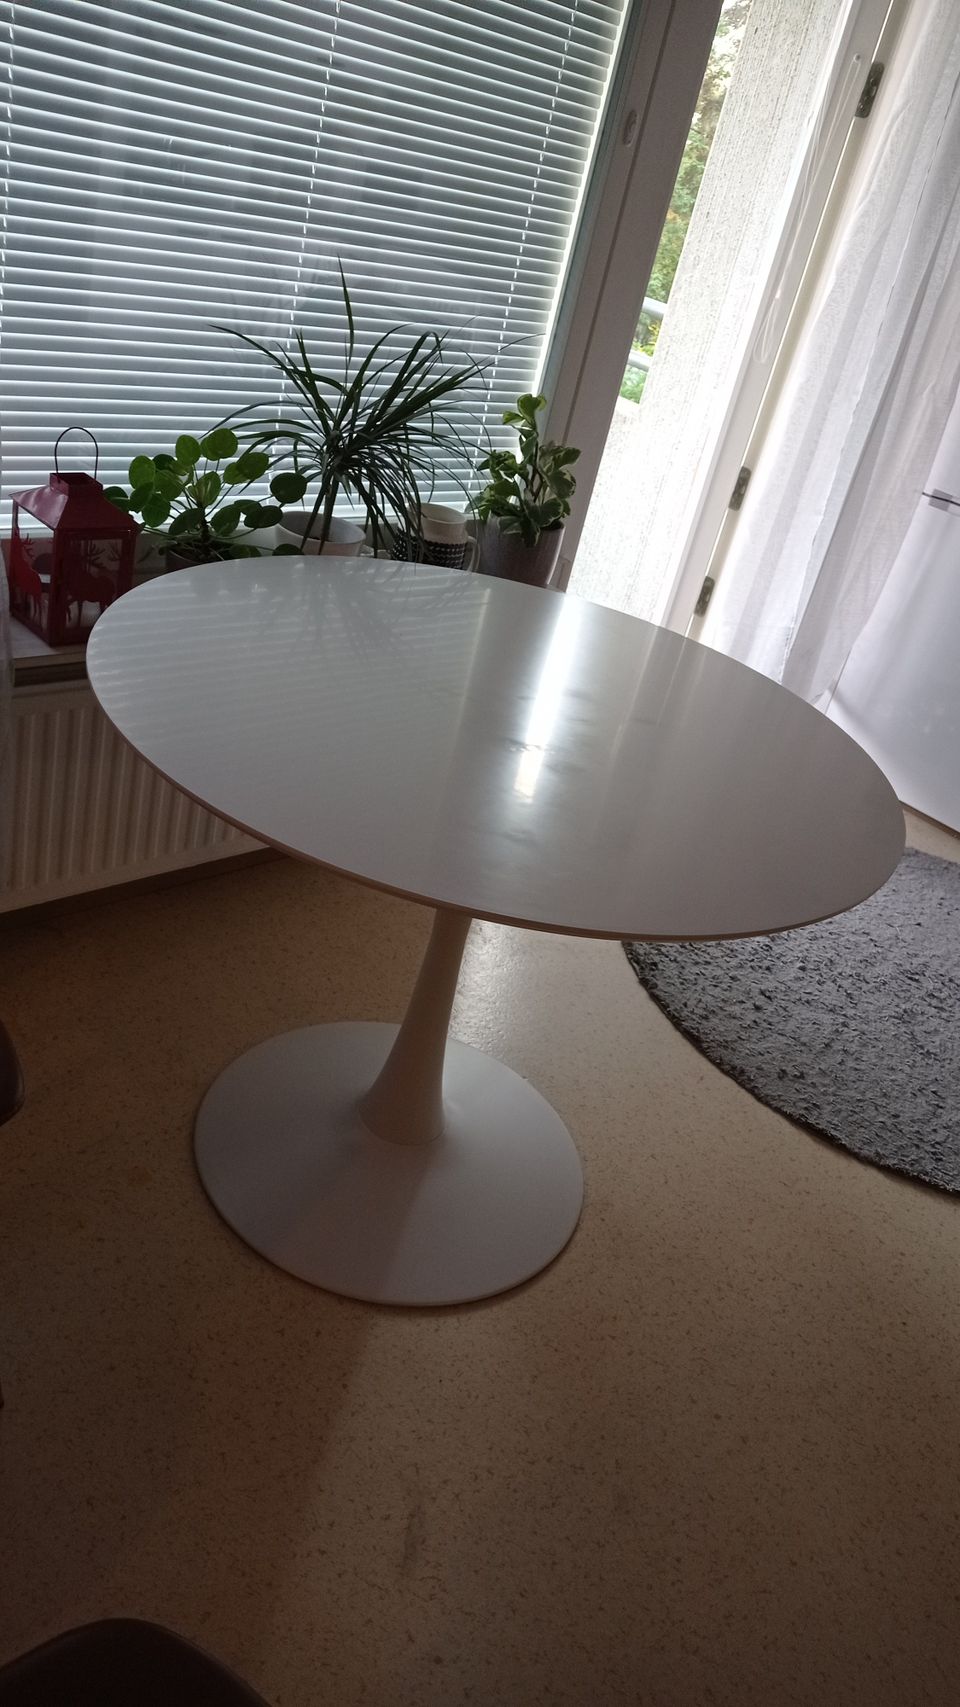 Valkoinen pikaripöytä